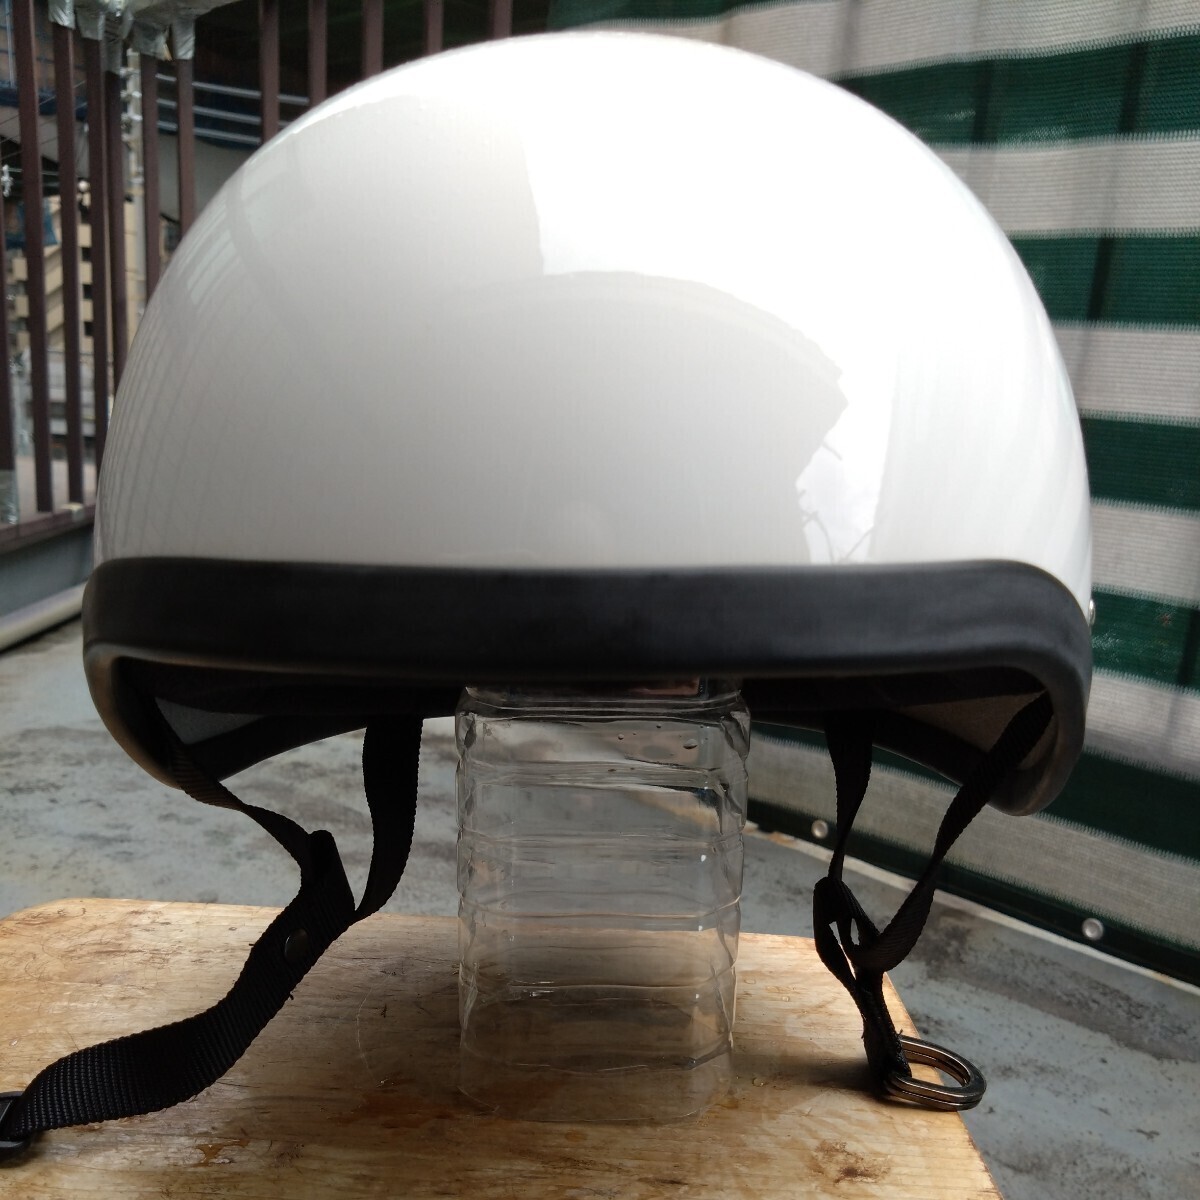 ハーフ ヘルメット ジャーマン タイプ 半キャップ アメリカンジェットヘルメット XL サイズ61〜63cm サイズ 調整可 長期保管品 一応箱付きの画像2